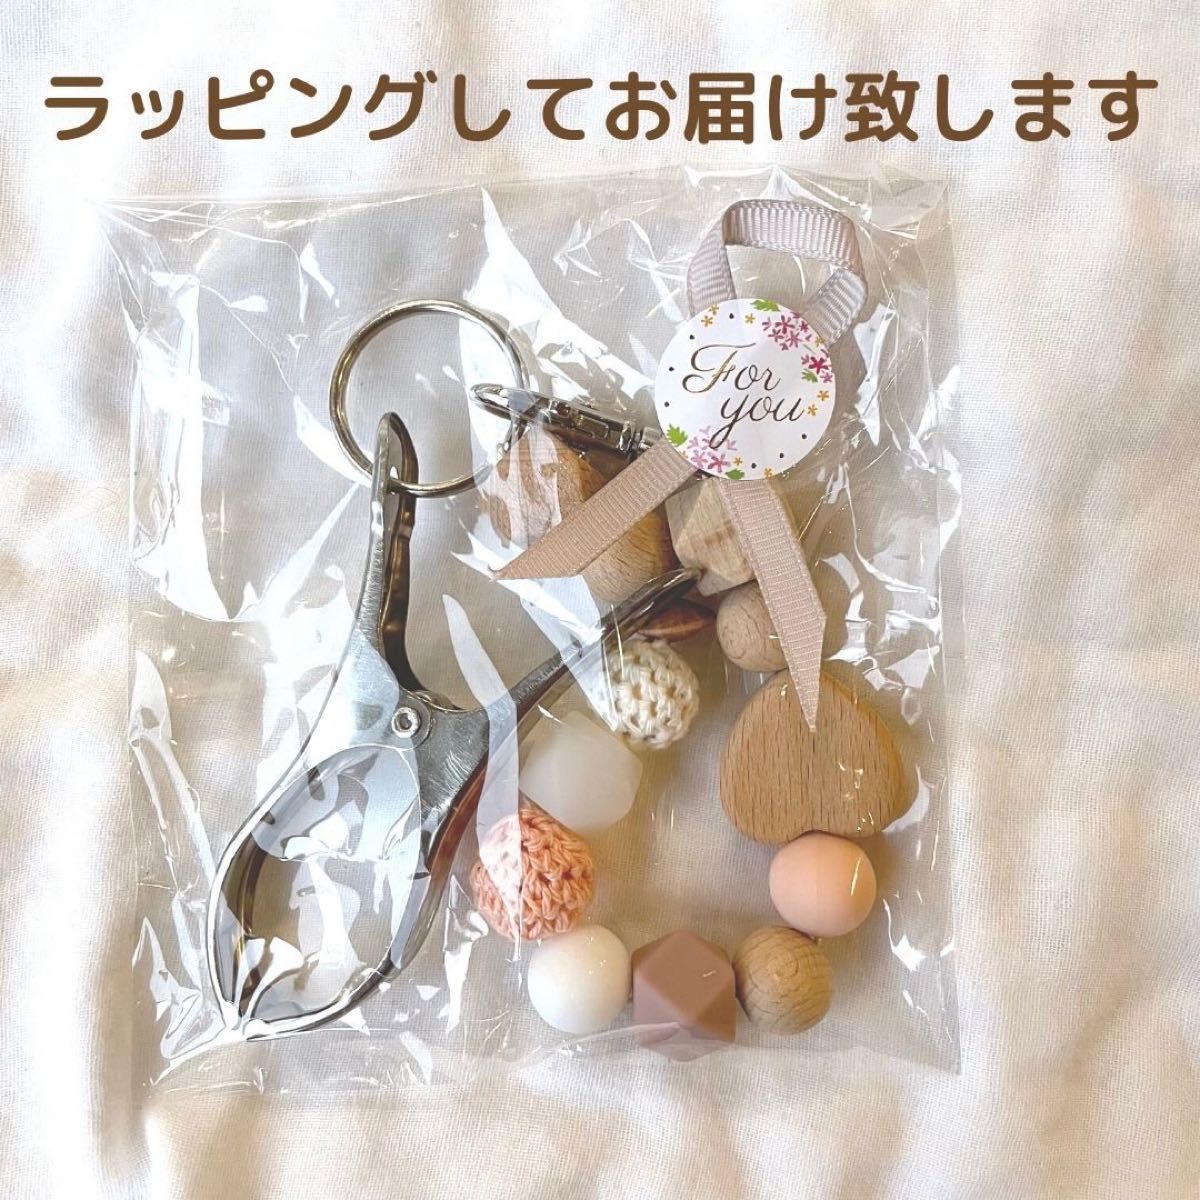 マグホルダー ベビーマグ ストローマグ 歯固め   育児  出産祝い 日本製